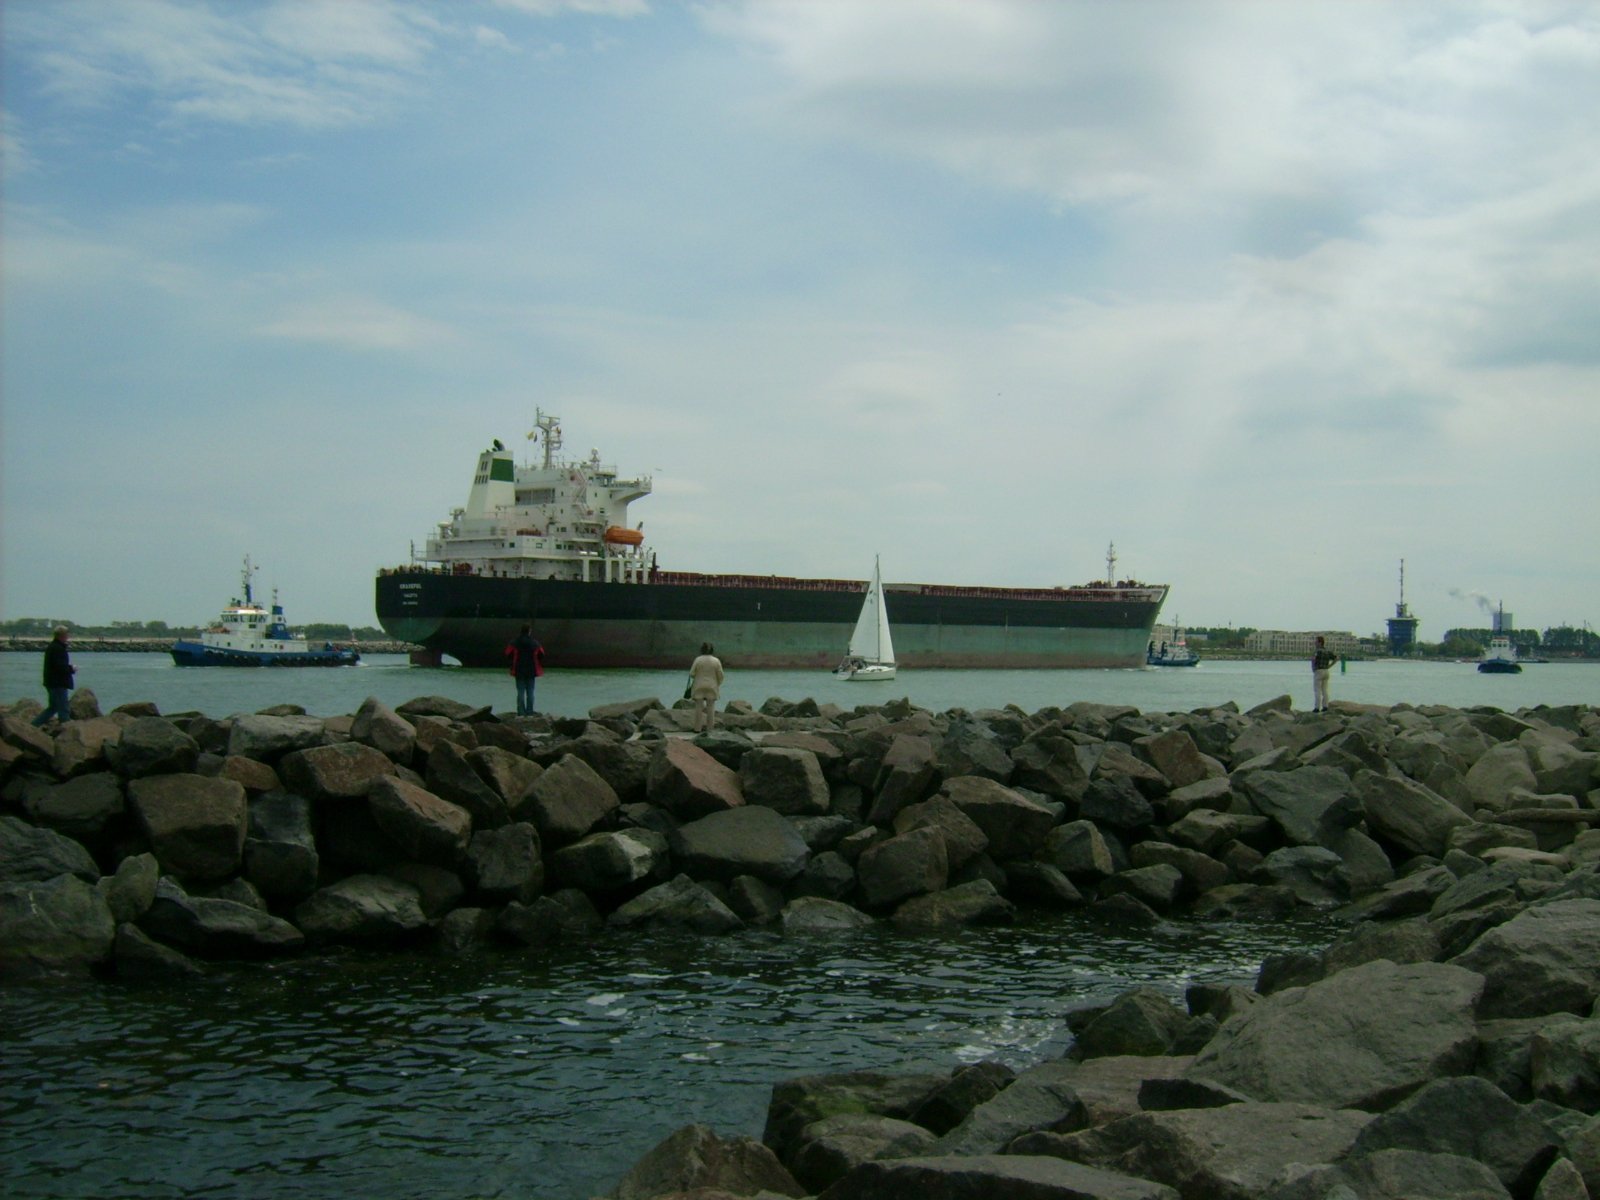 Farbphoto: Blick von der Mole in Warnemünde auf den in den Hafen von Rostock hineinfahrenden Massengutfrachter GRACEFUL im Juni 2009. Photograph: Bernd Paepcke.